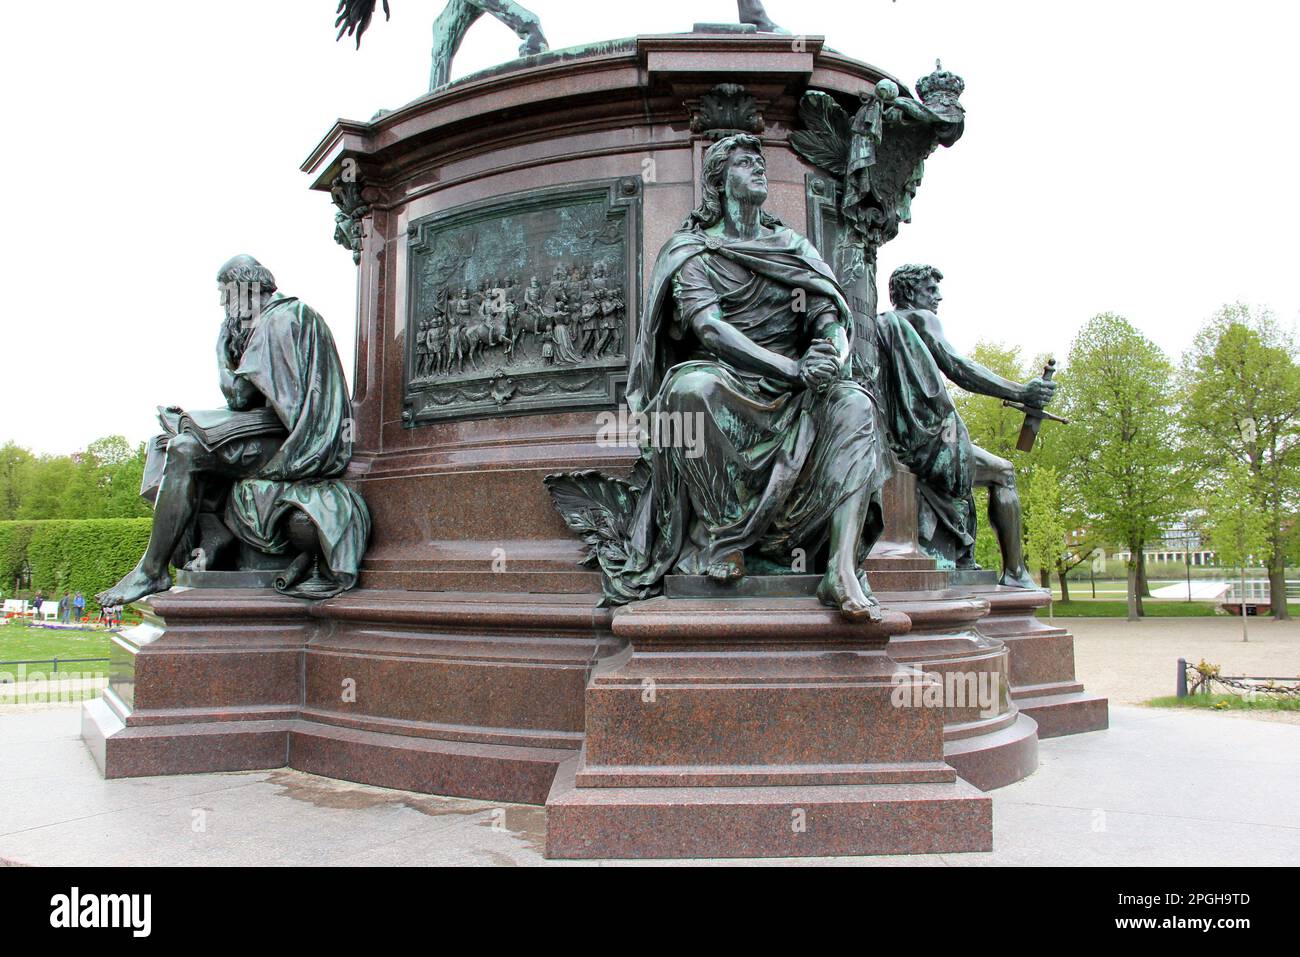 Detalles escultóricos del pedestal de bronce estatua ecuestre de Friedrich Franz II, el Gran Duque de Mecklemburgo-Schwerin, Schwerin, Alemania Foto de stock